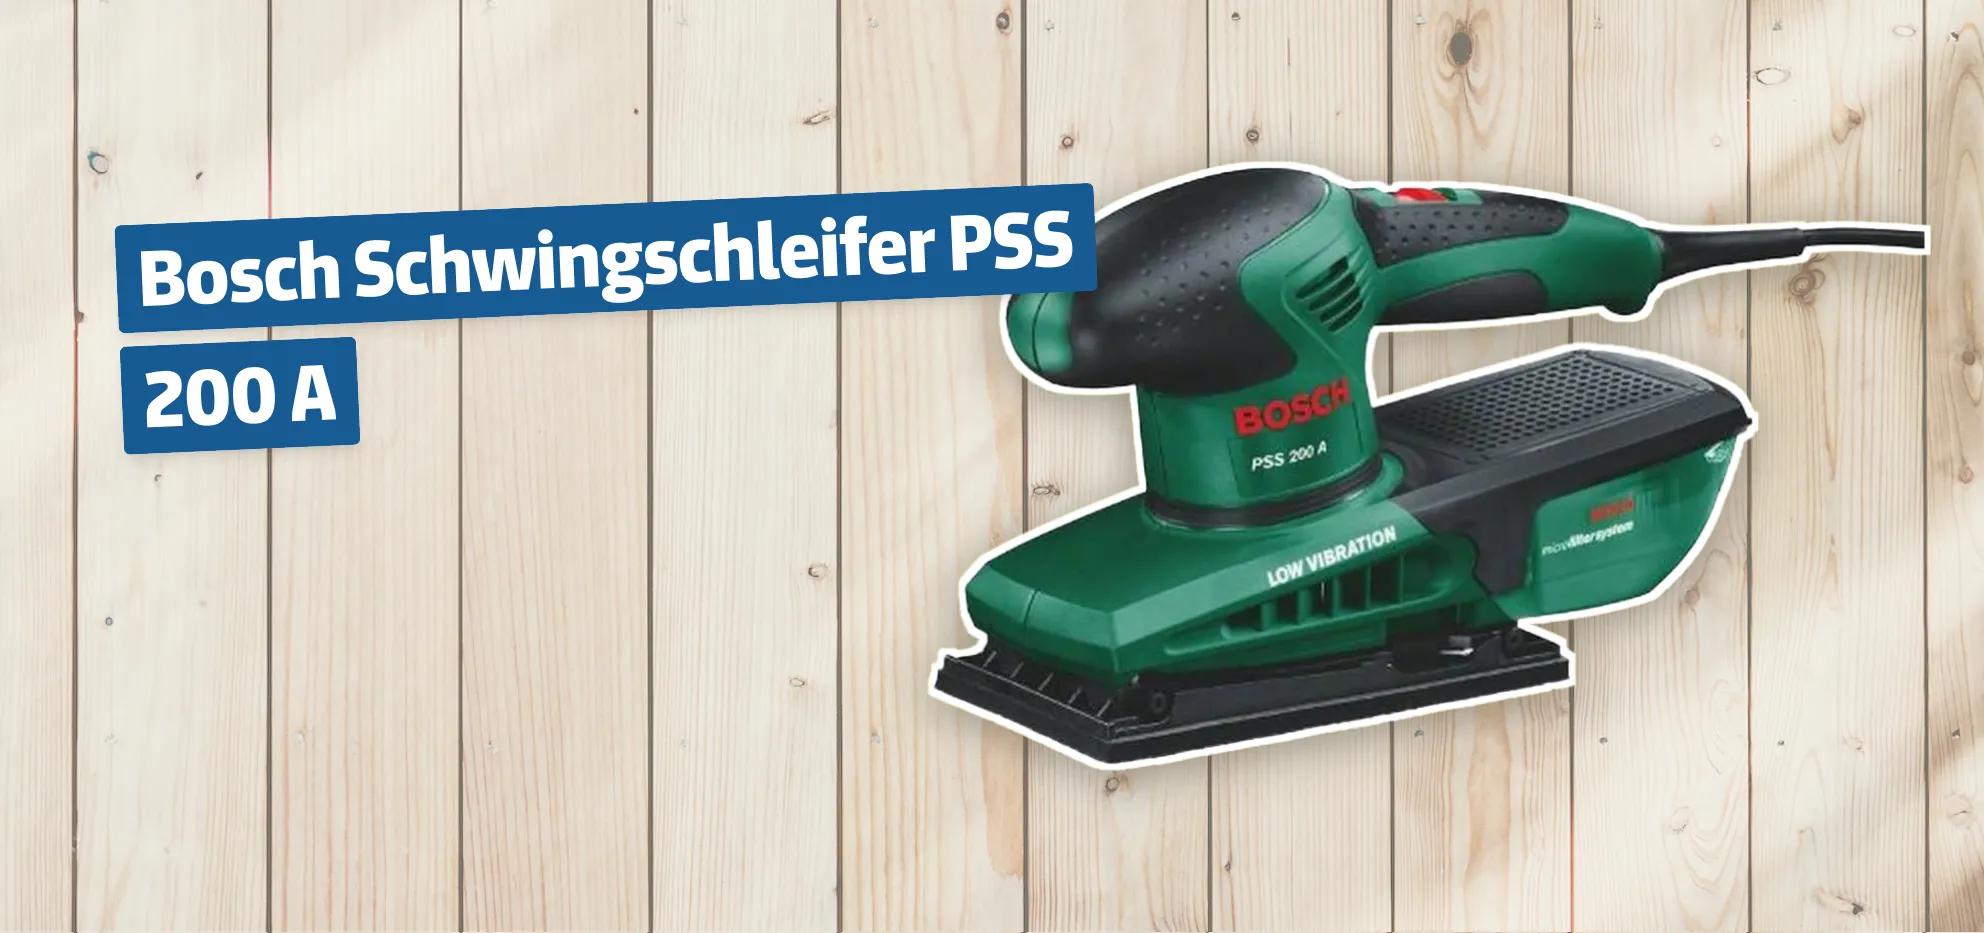 Bosch Schwingschleifer PSS 200 A